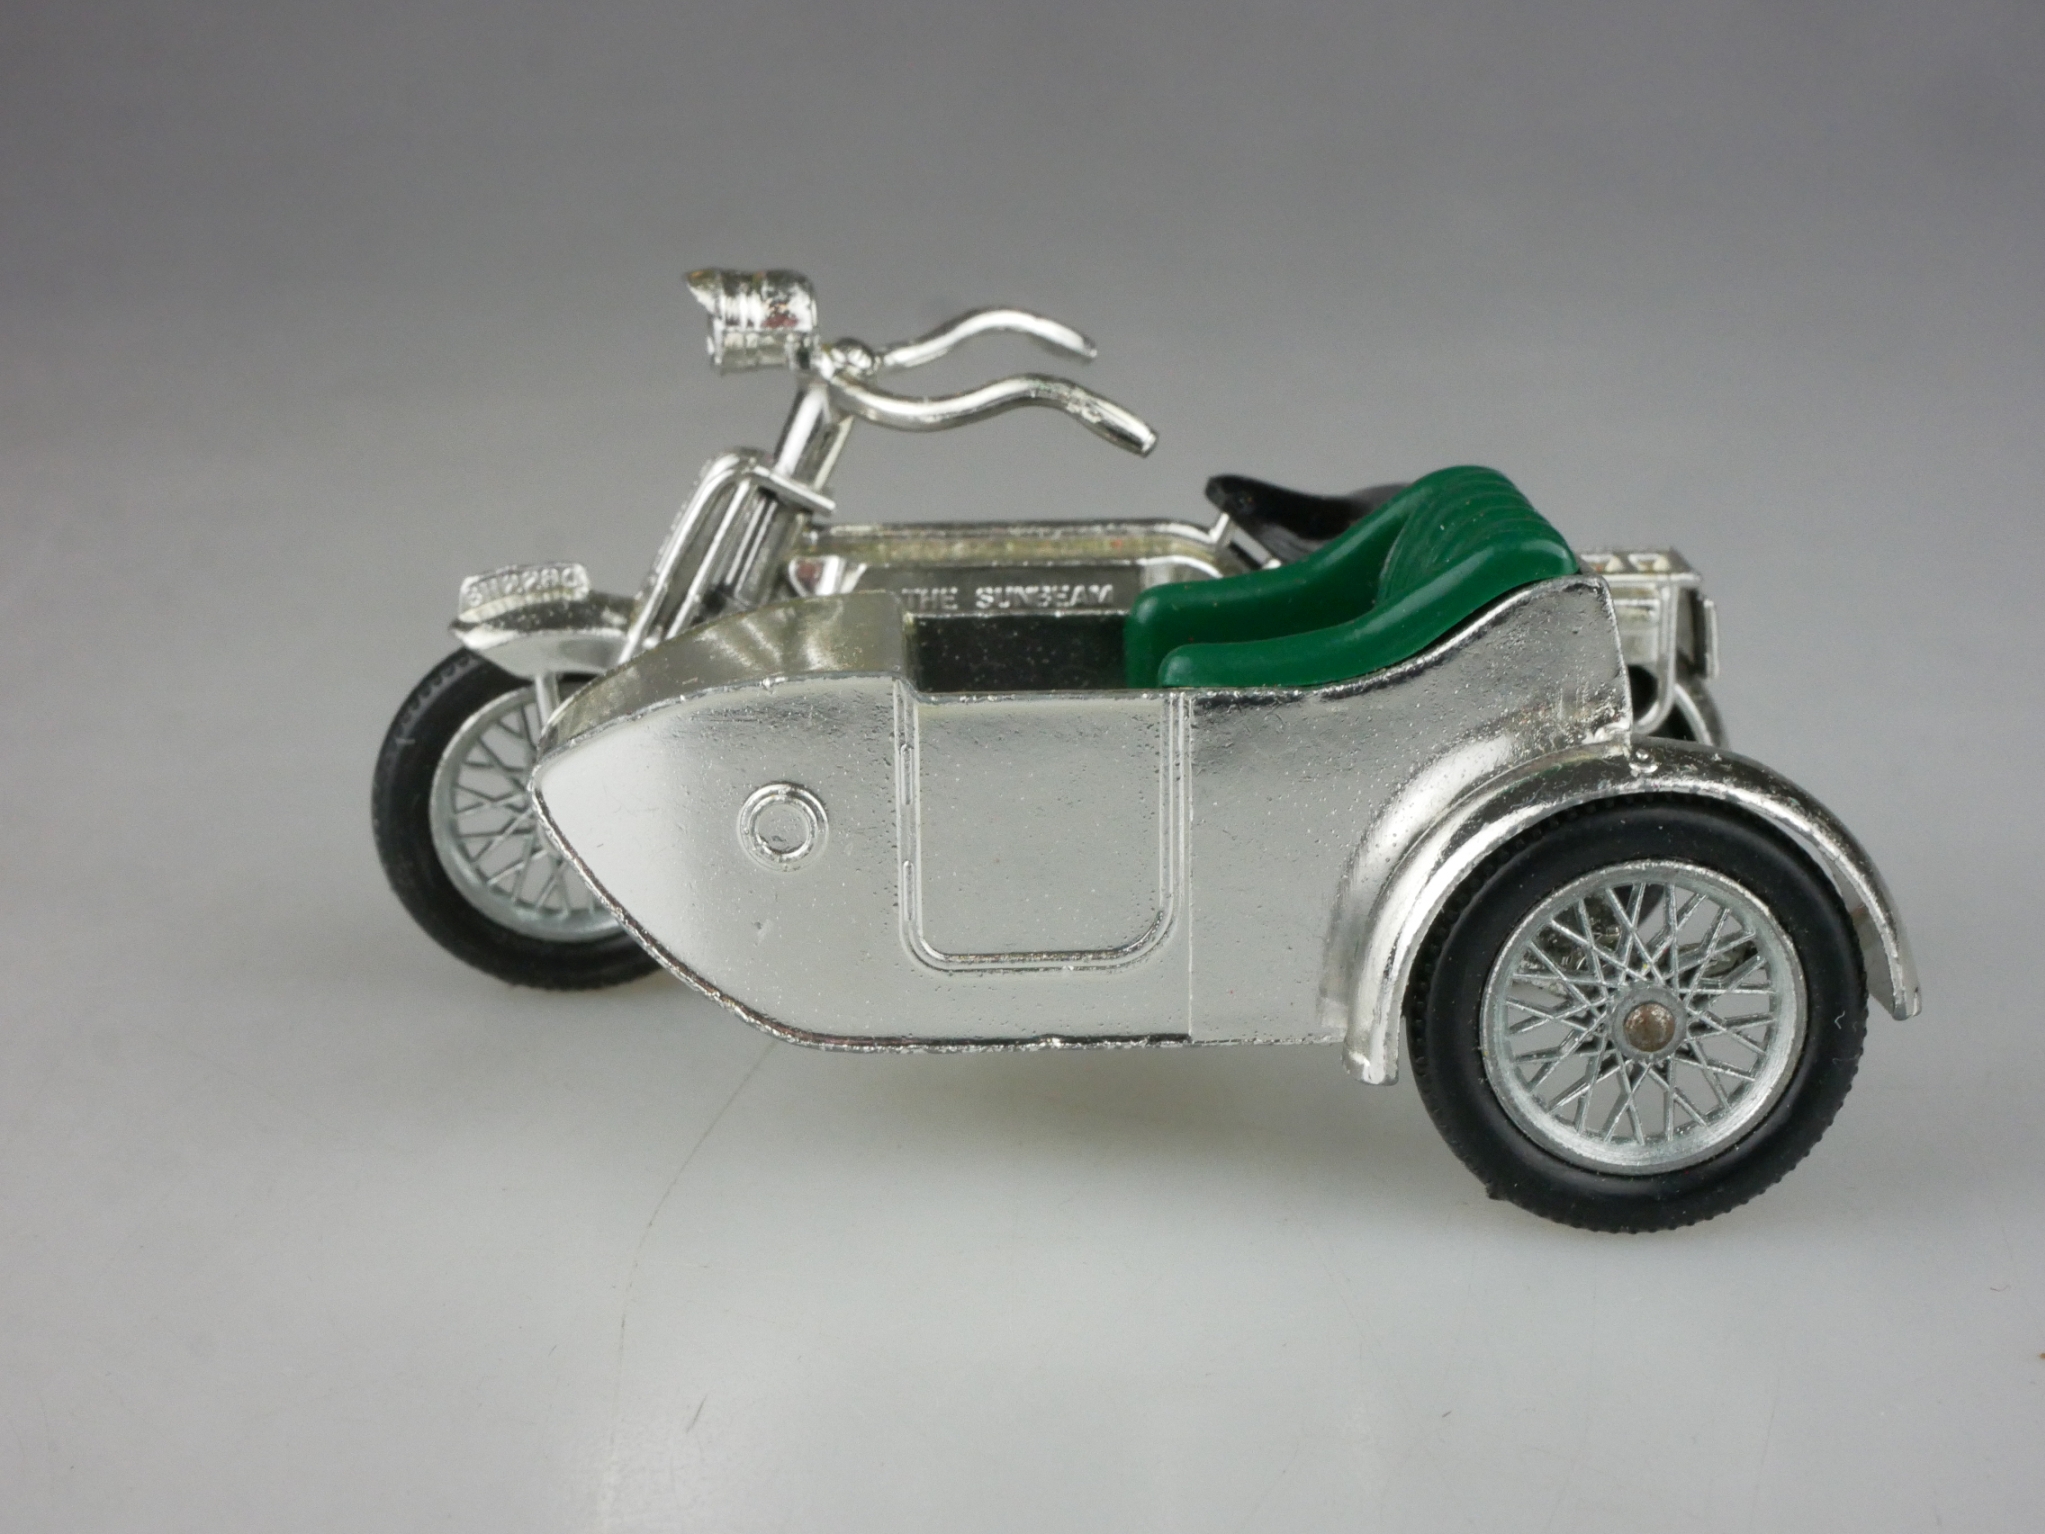 Y-08-2 Sunbeam Motor Cycle 1914 - 46816